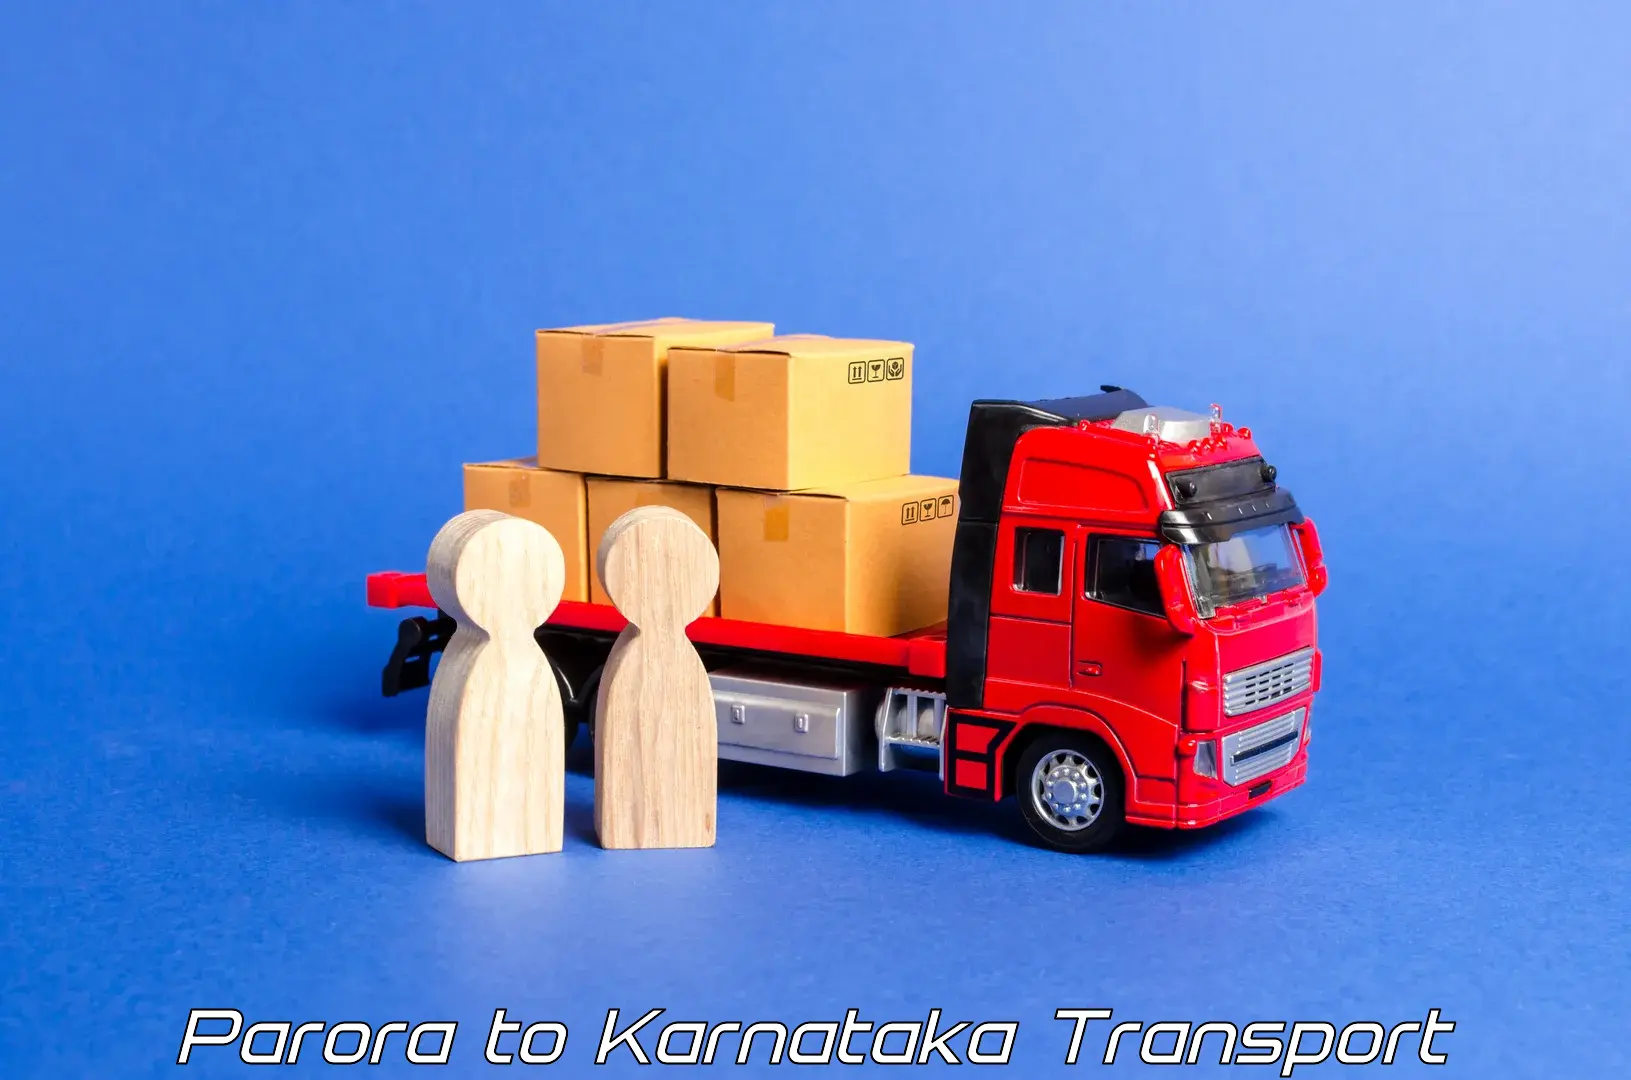 Online transport Parora to Gonikoppal